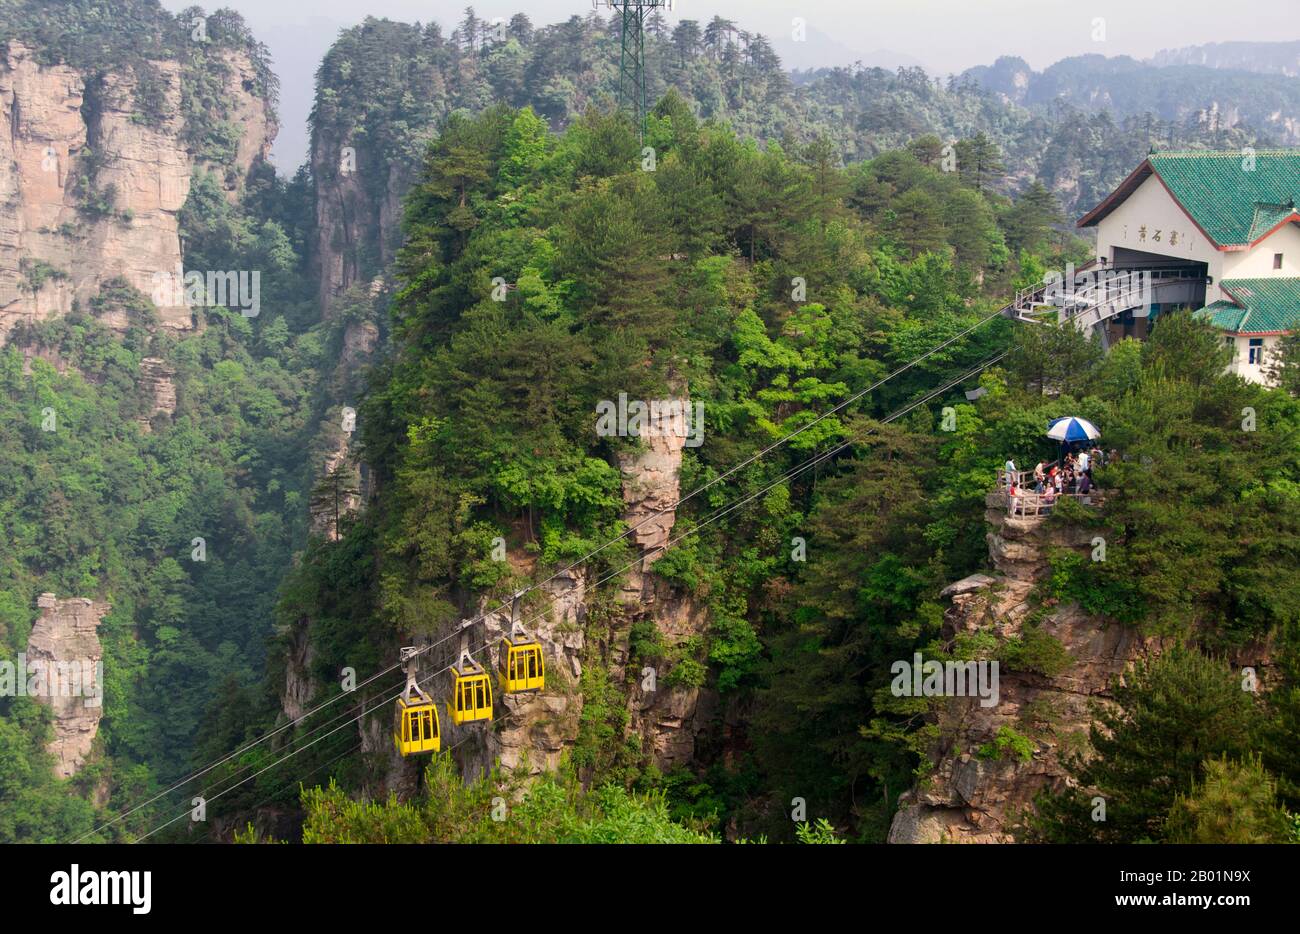 Cina: Funivia, area panoramica di Wulingyuan (Zhangjiajie), provincia di Hunan. La riserva panoramica di Wulingyuan è un'area panoramica e di interesse storico nella provincia di Hunan. È nota per i suoi circa 3.100 alti pilastri di arenaria di quarzite, alcuni dei quali hanno un'altezza di oltre 800 metri (2.600 piedi) e sono un tipo di formazione carsica. Nel 1992 è stato dichiarato patrimonio dell'umanità dall'UNESCO. Foto Stock